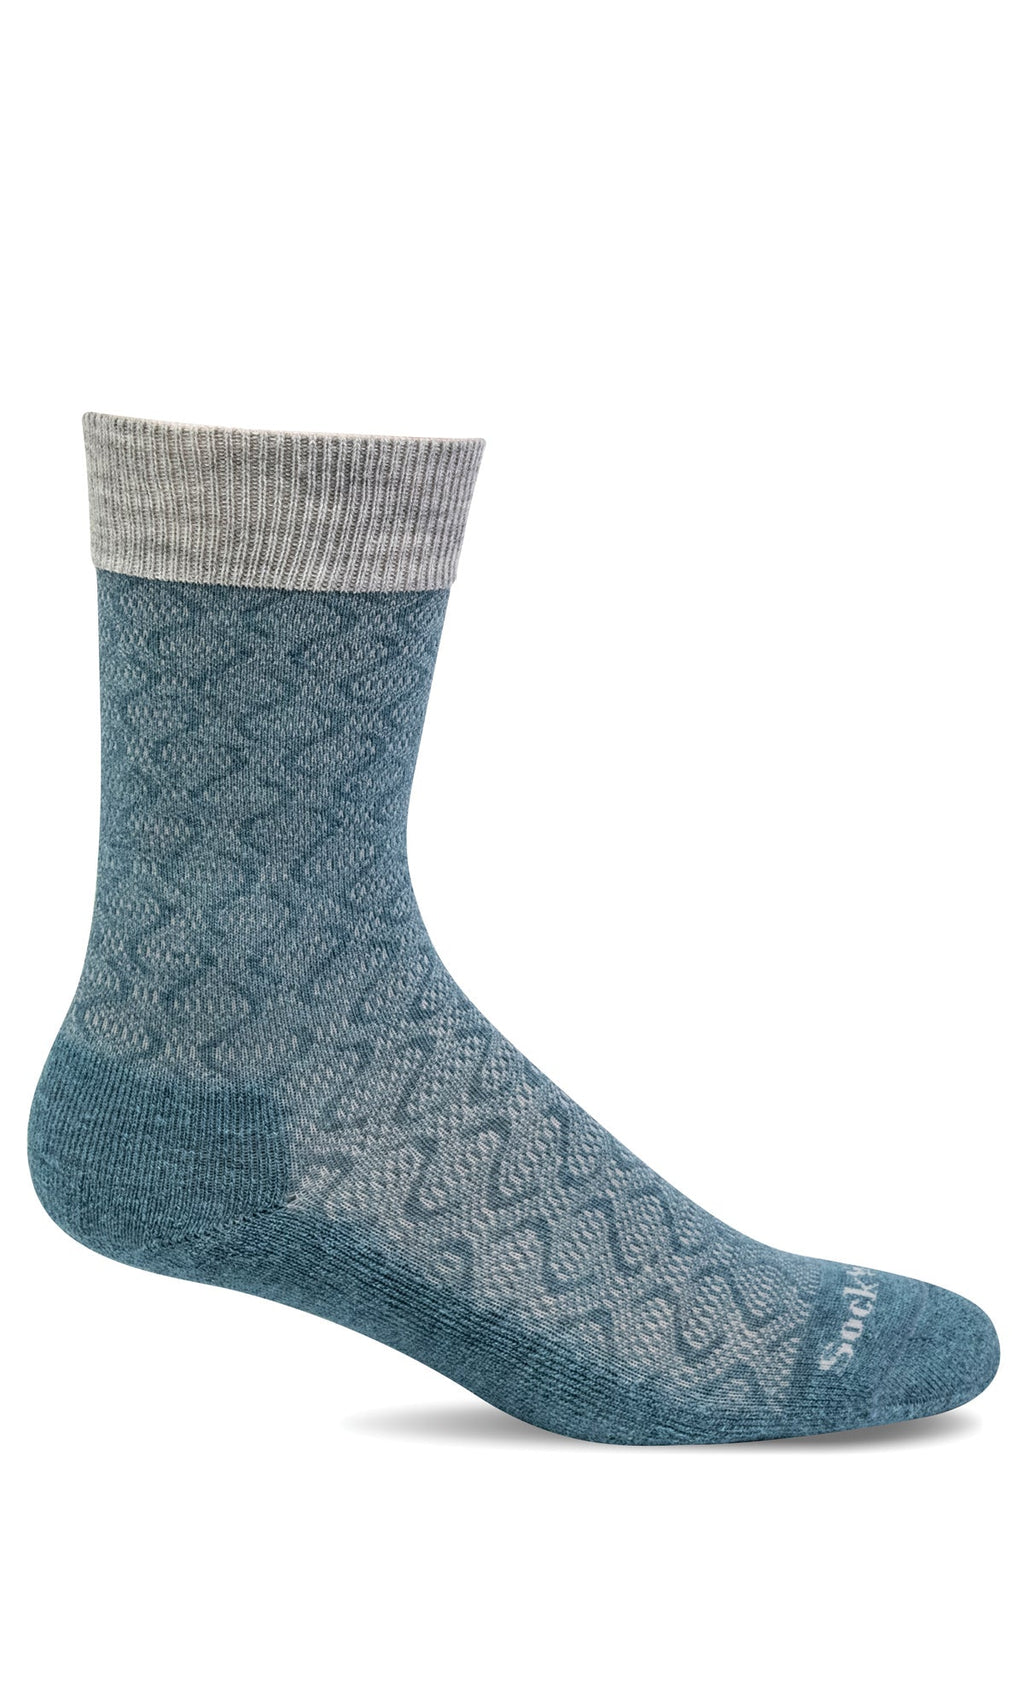 Women's Softie | Relaxed Fit Socks - Merino Wool Relaxed Fit/Diabetic Friendly - Sockwell